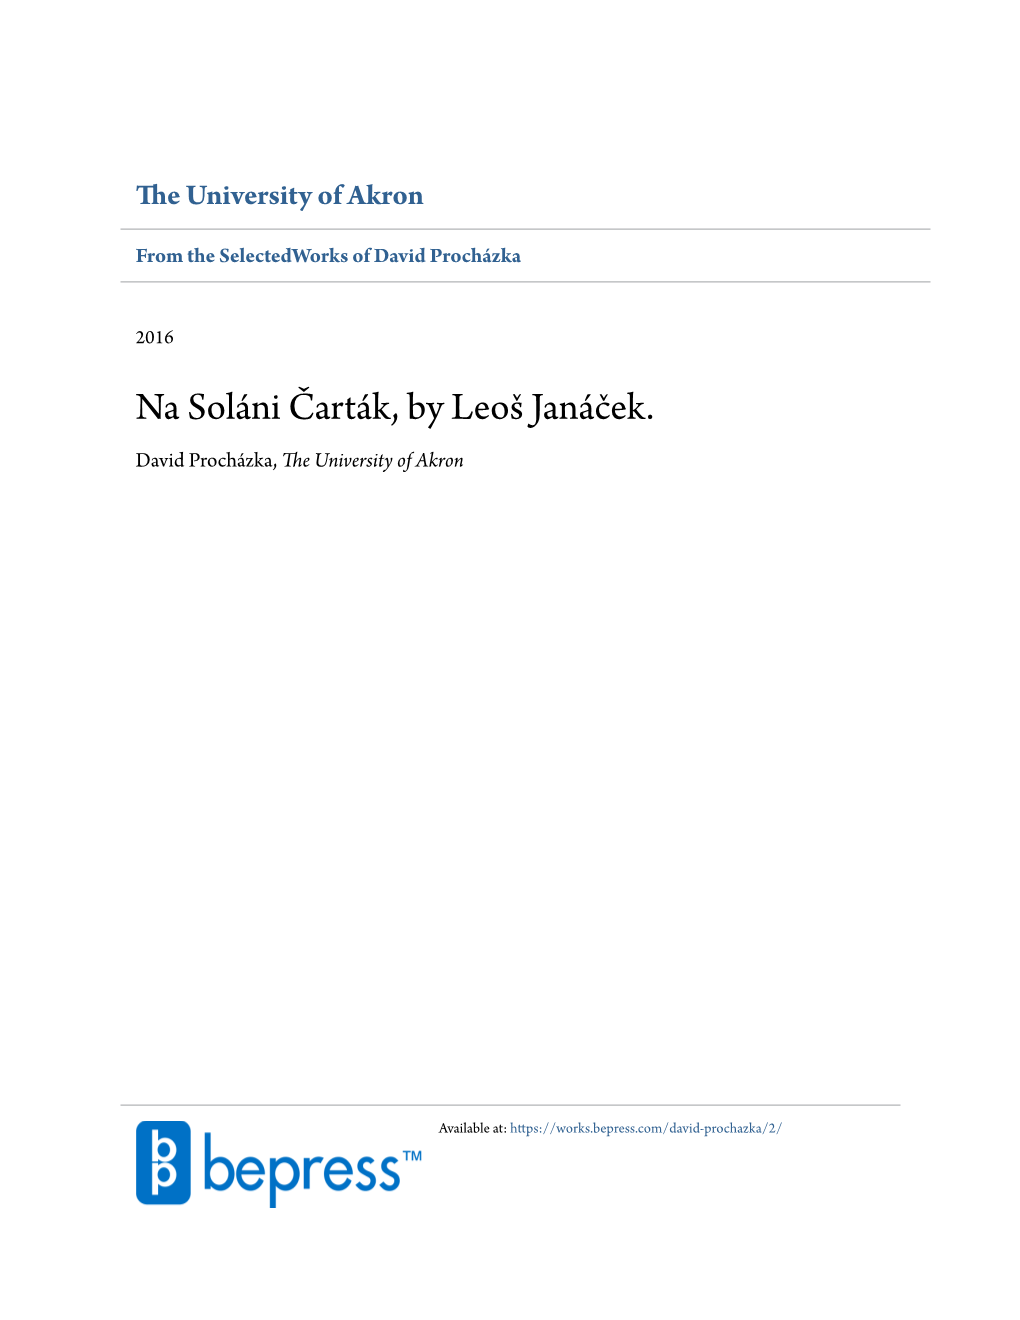 Na Soláni Čarták, by Leoš Janáček. David Procházka, the University of Akron